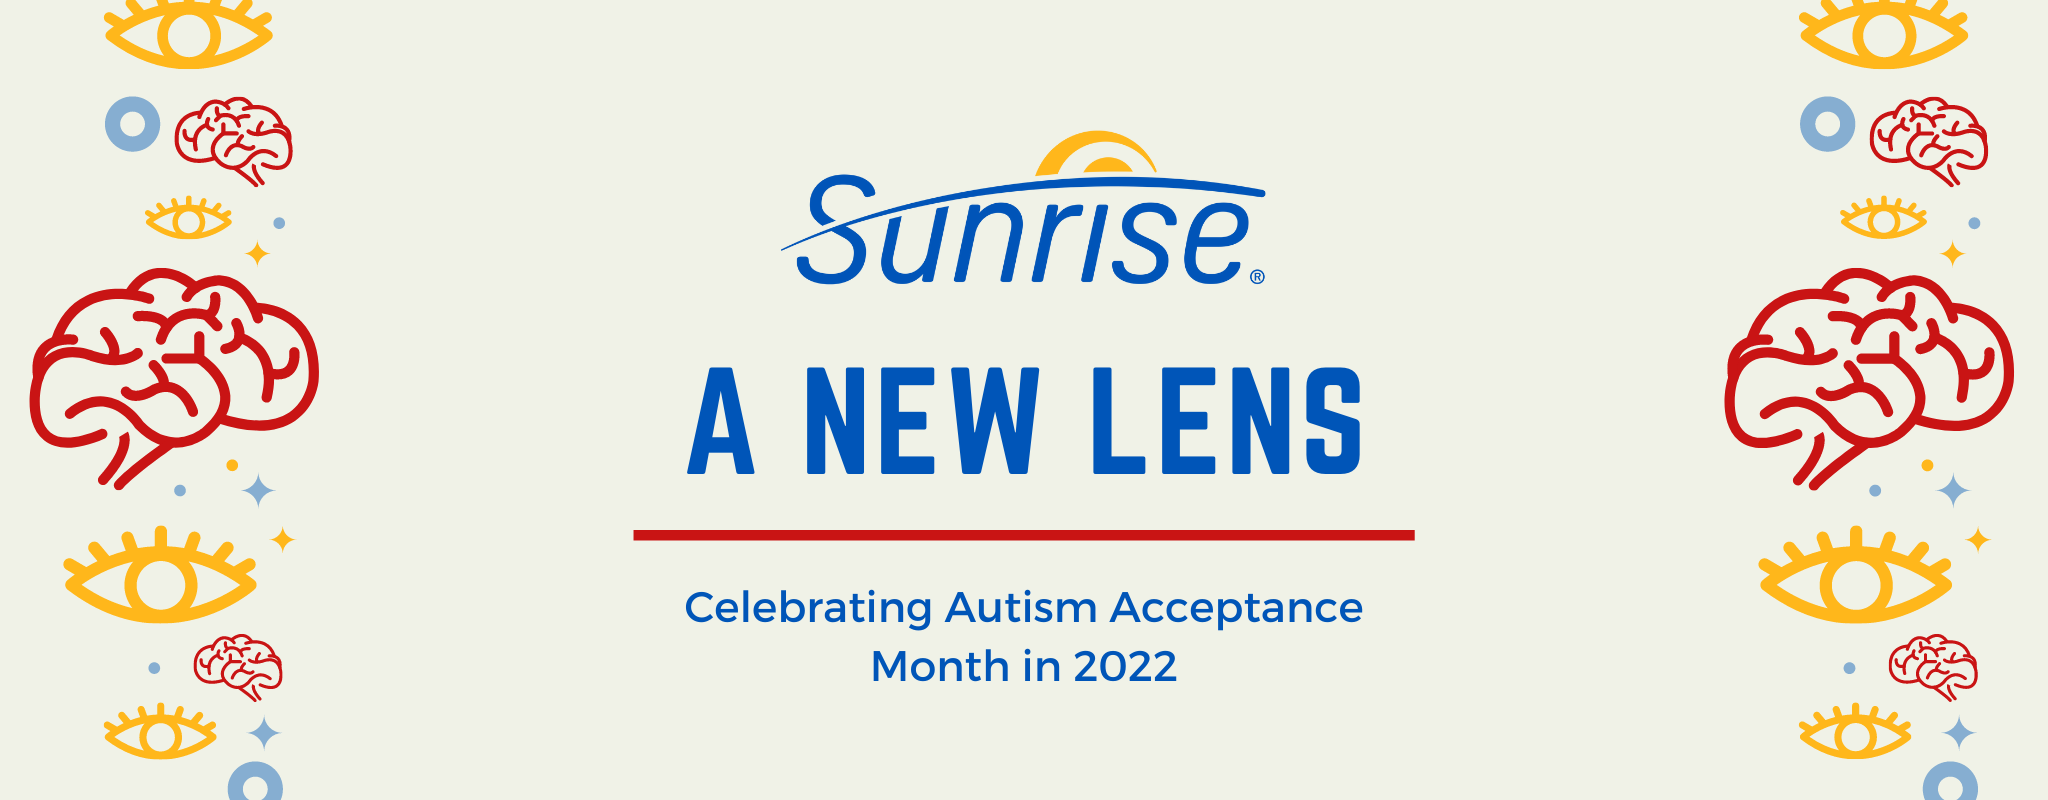 Couverture de bannière de blog avec le logo Blue Sunrise avec un accent jaune. Le texte "A New Lens" est centré en lettres majuscules bleues. En dessous se trouve une ligne rouge avec le texte "célébrer le mois de l'acceptation de l'autisme en 2022" ci-dessous.